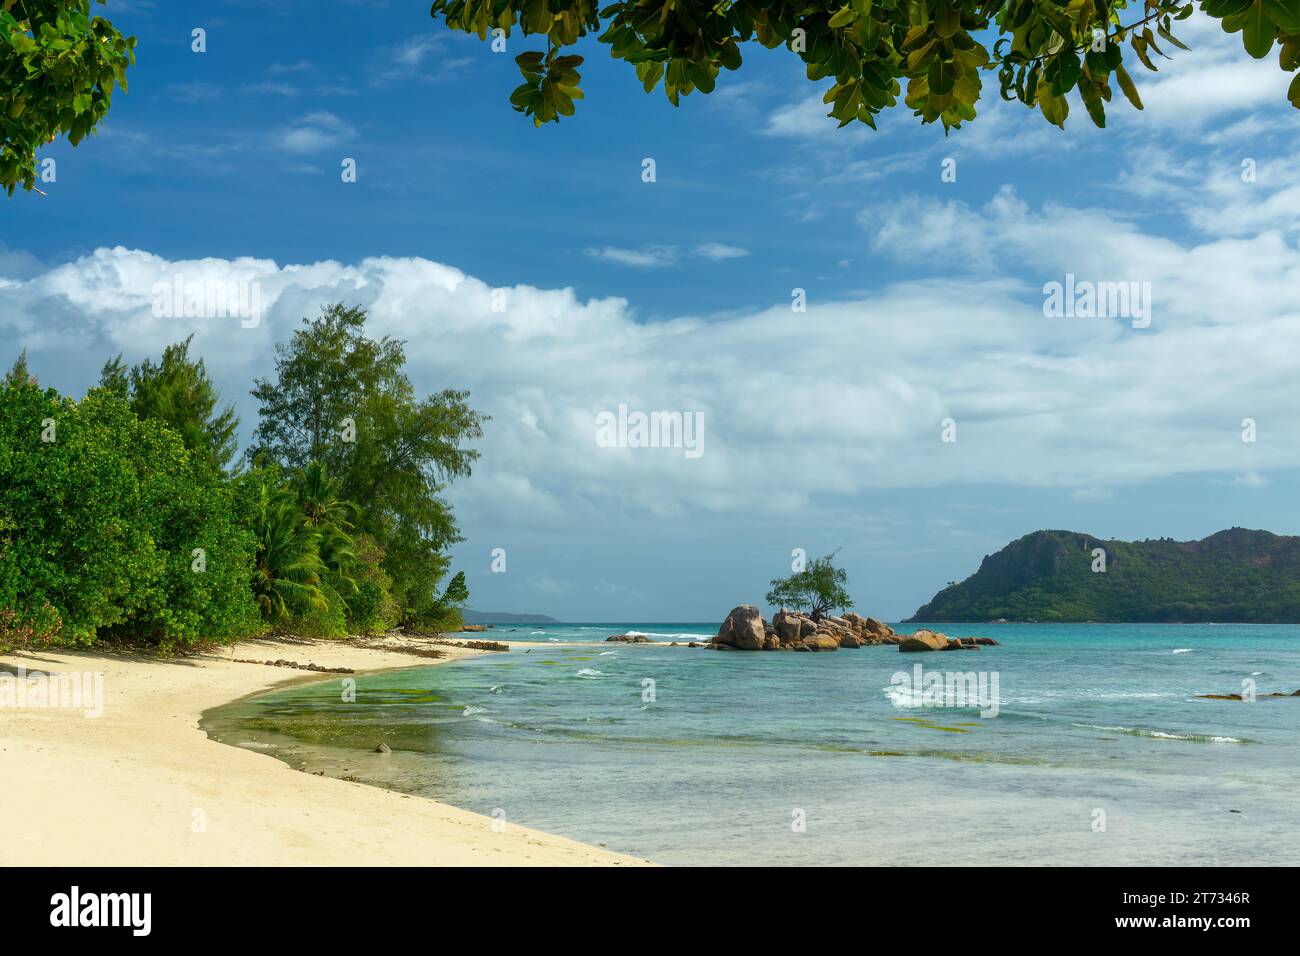 Seychelles scenic landscape in Praslin island. Smoon island near Anse Takamaka beach Stock Photo